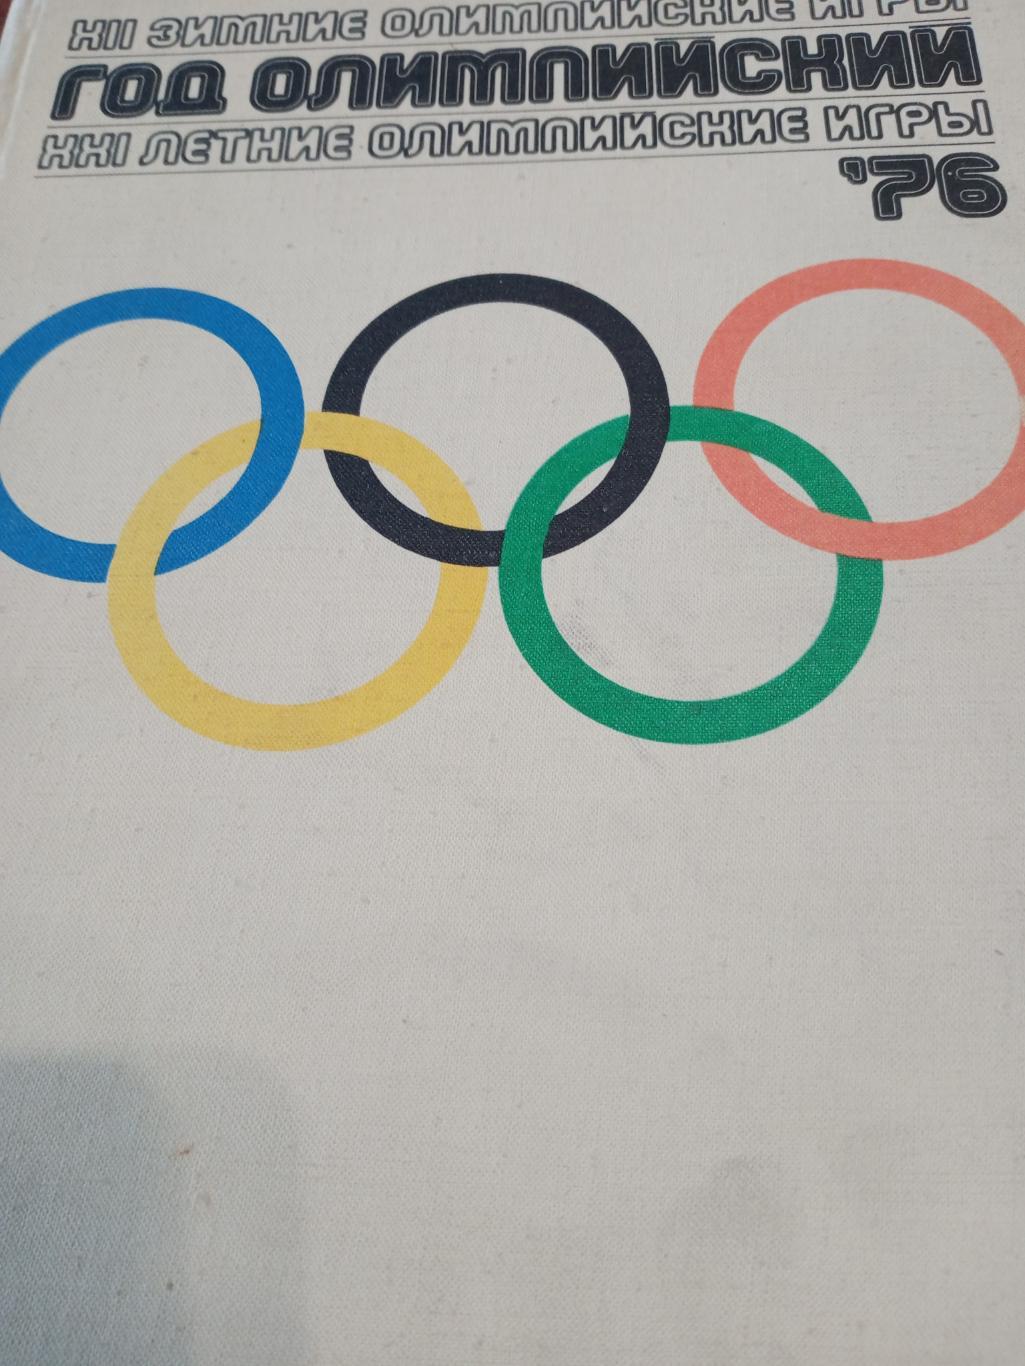 Фотоальбом. Олимпийские игры 1976 года - Инсбрук